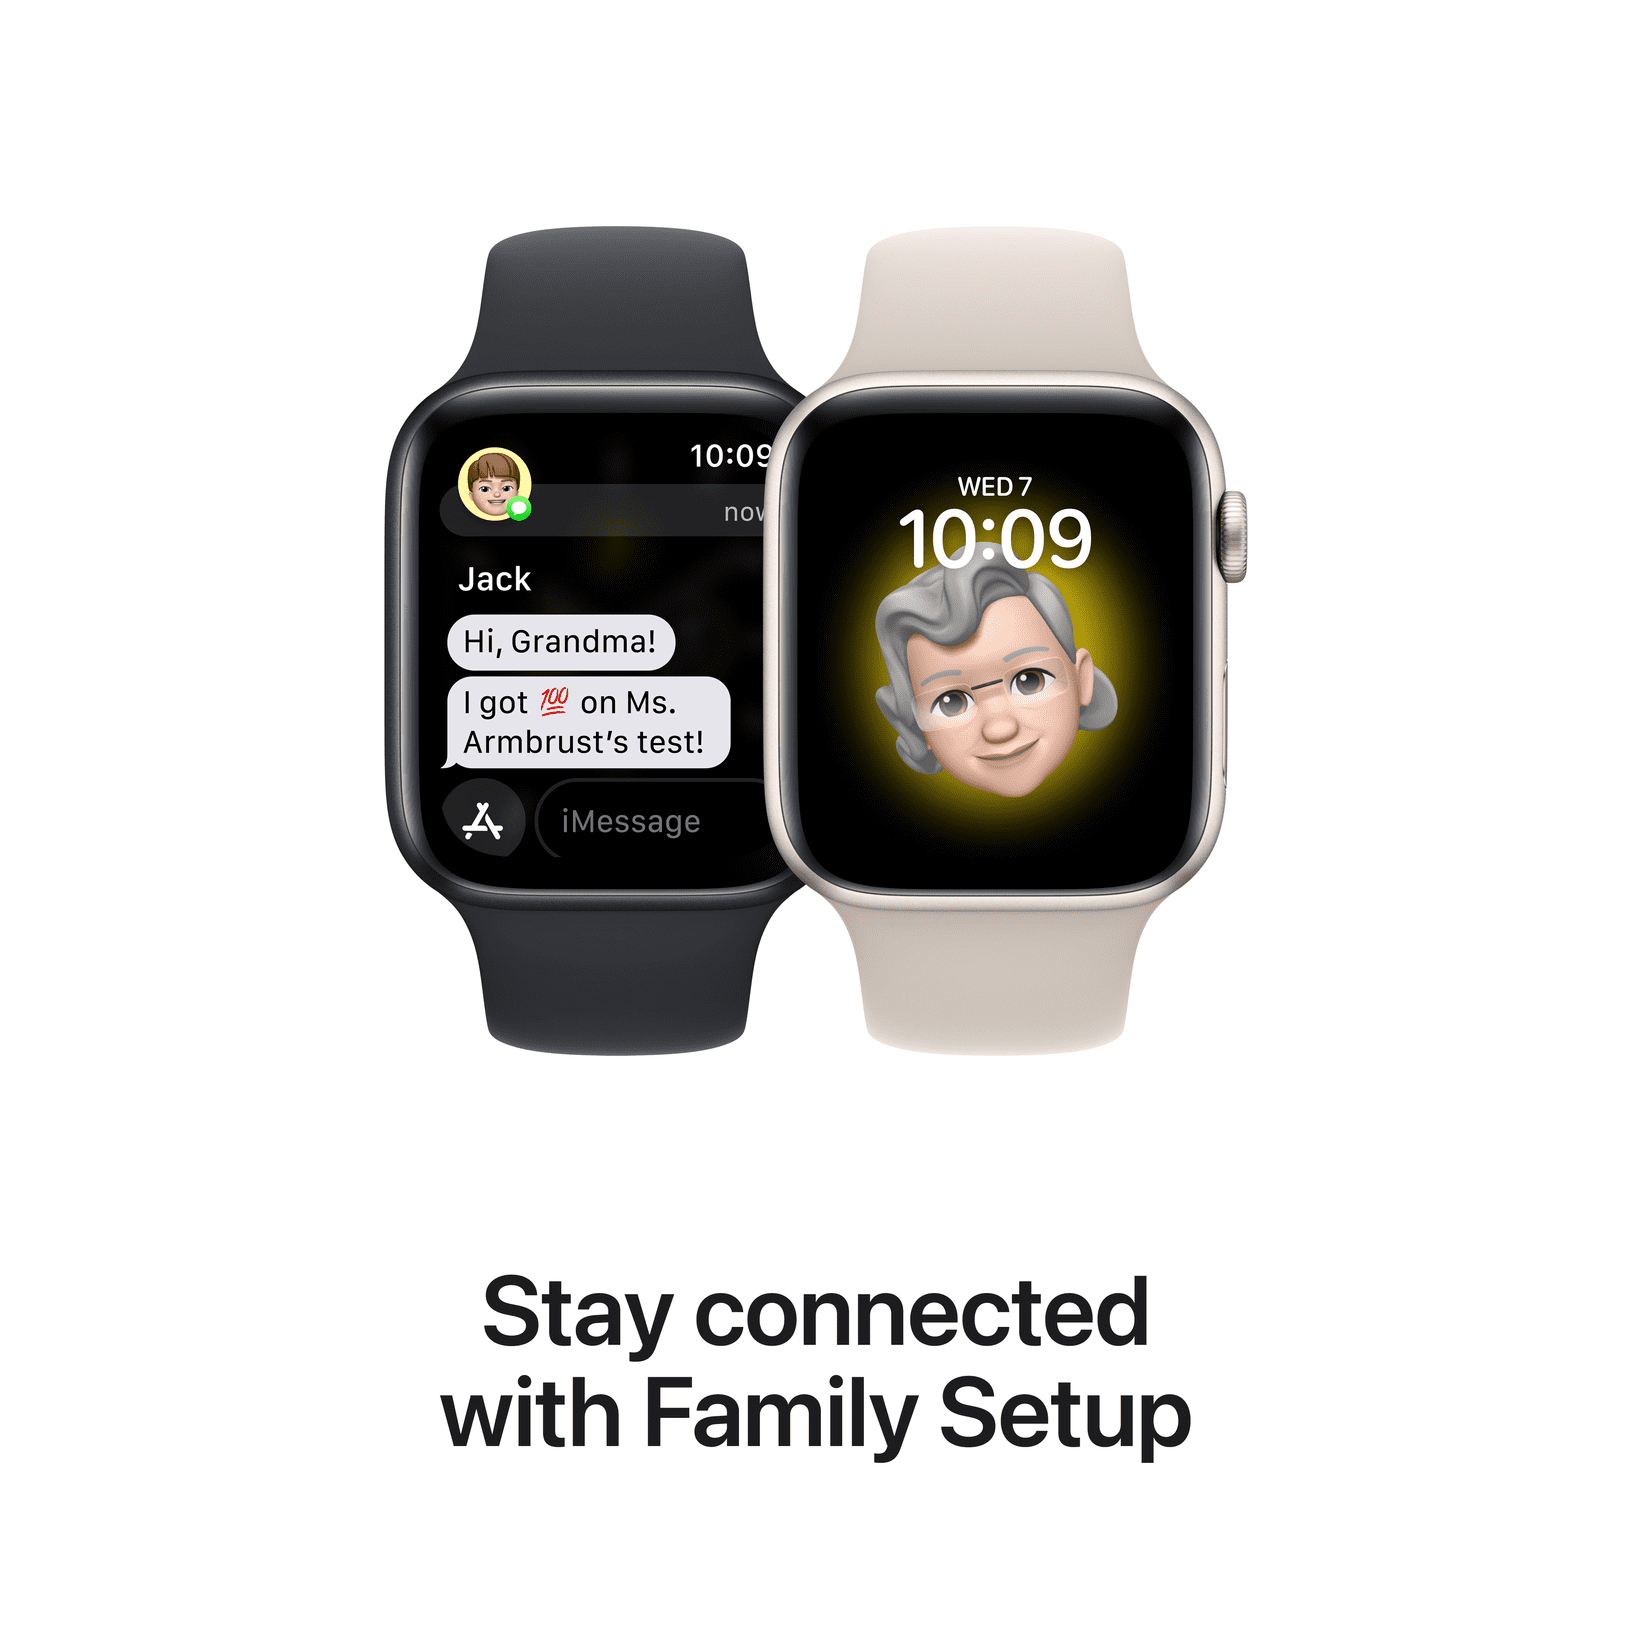 Relogio Smart Apple Watch Se 44mm A2352 Silver Blu 00601